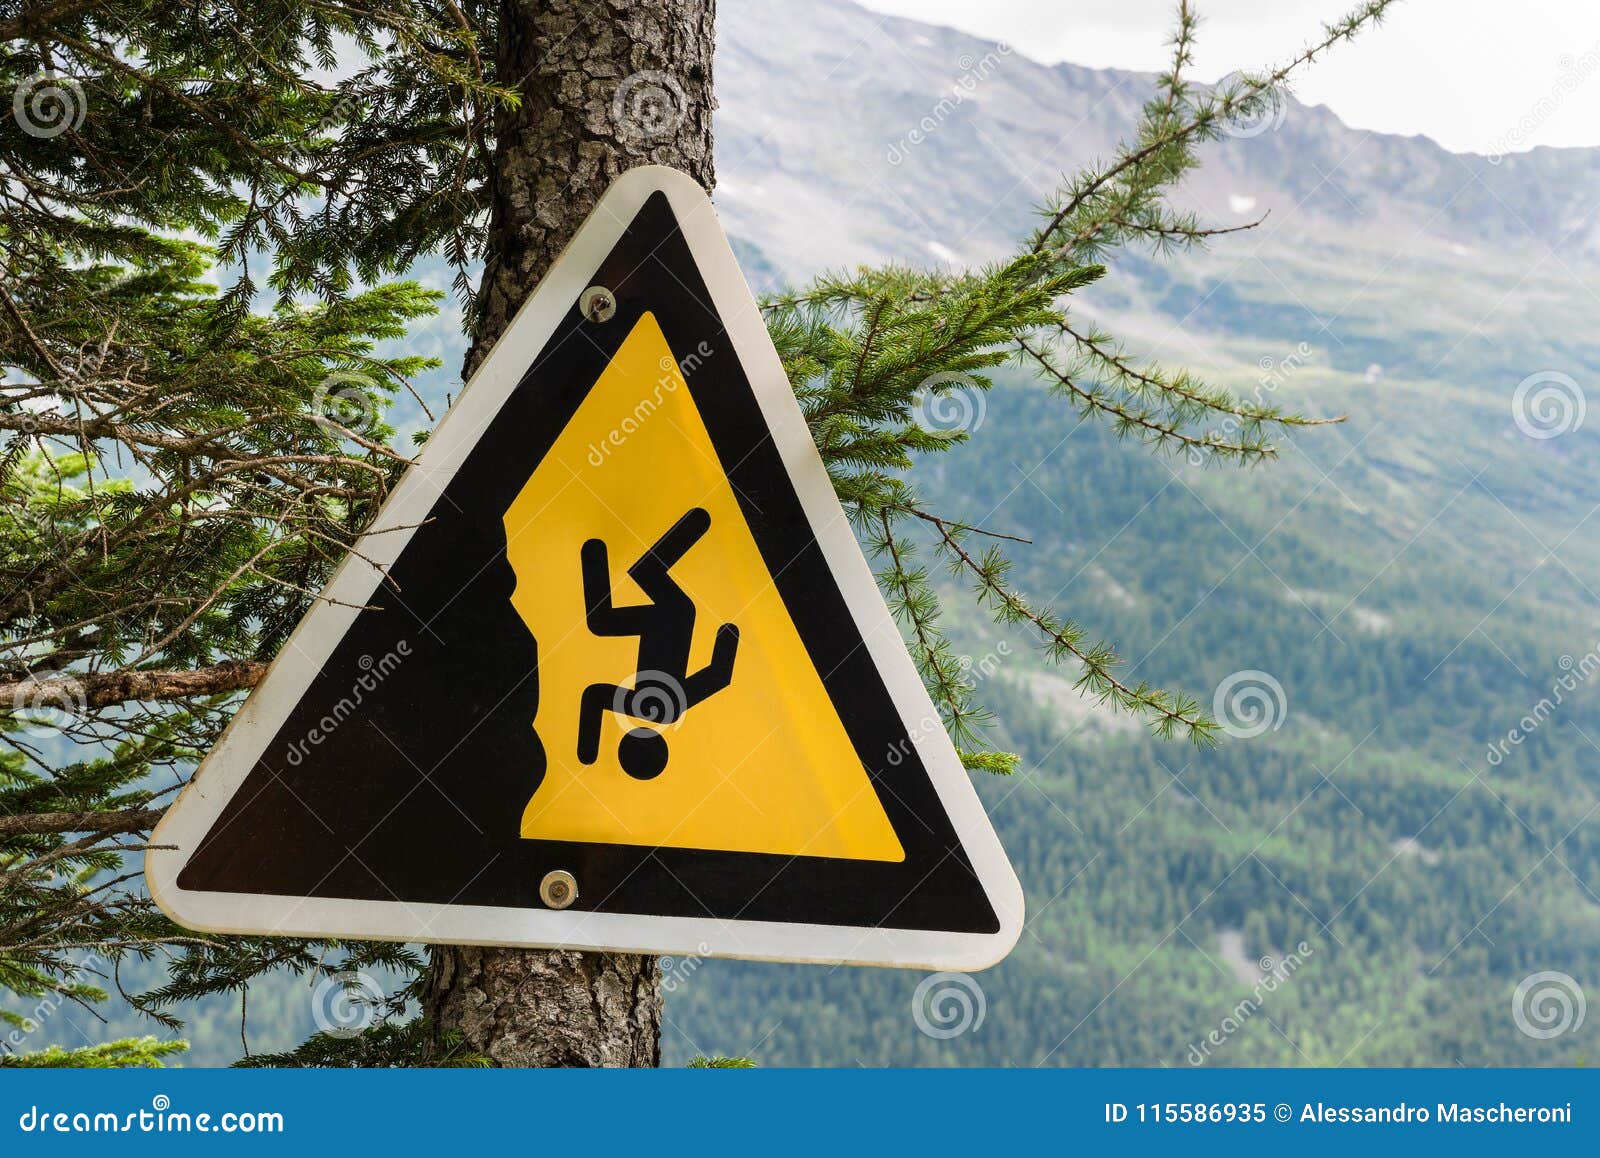 Какие основные опасности в горах. Знаки опасности в горах. Предупредительные знаки в Альпах. Знак осторожно обрыв в горах. Знак опасно обрыв.